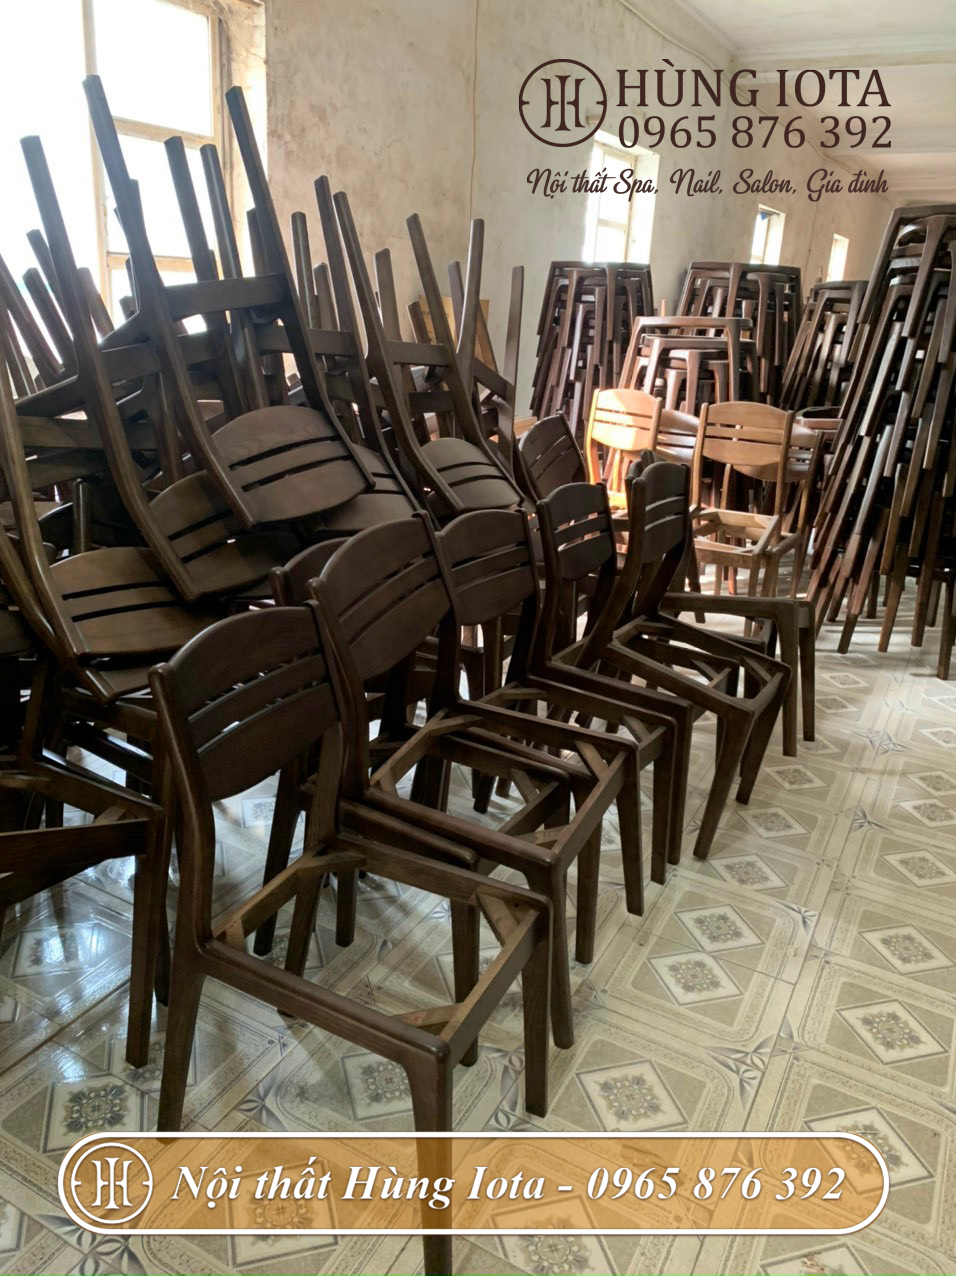 Xưởng sản xuất ghế gỗ Vega 3 lá uy tín tại Hà Nội